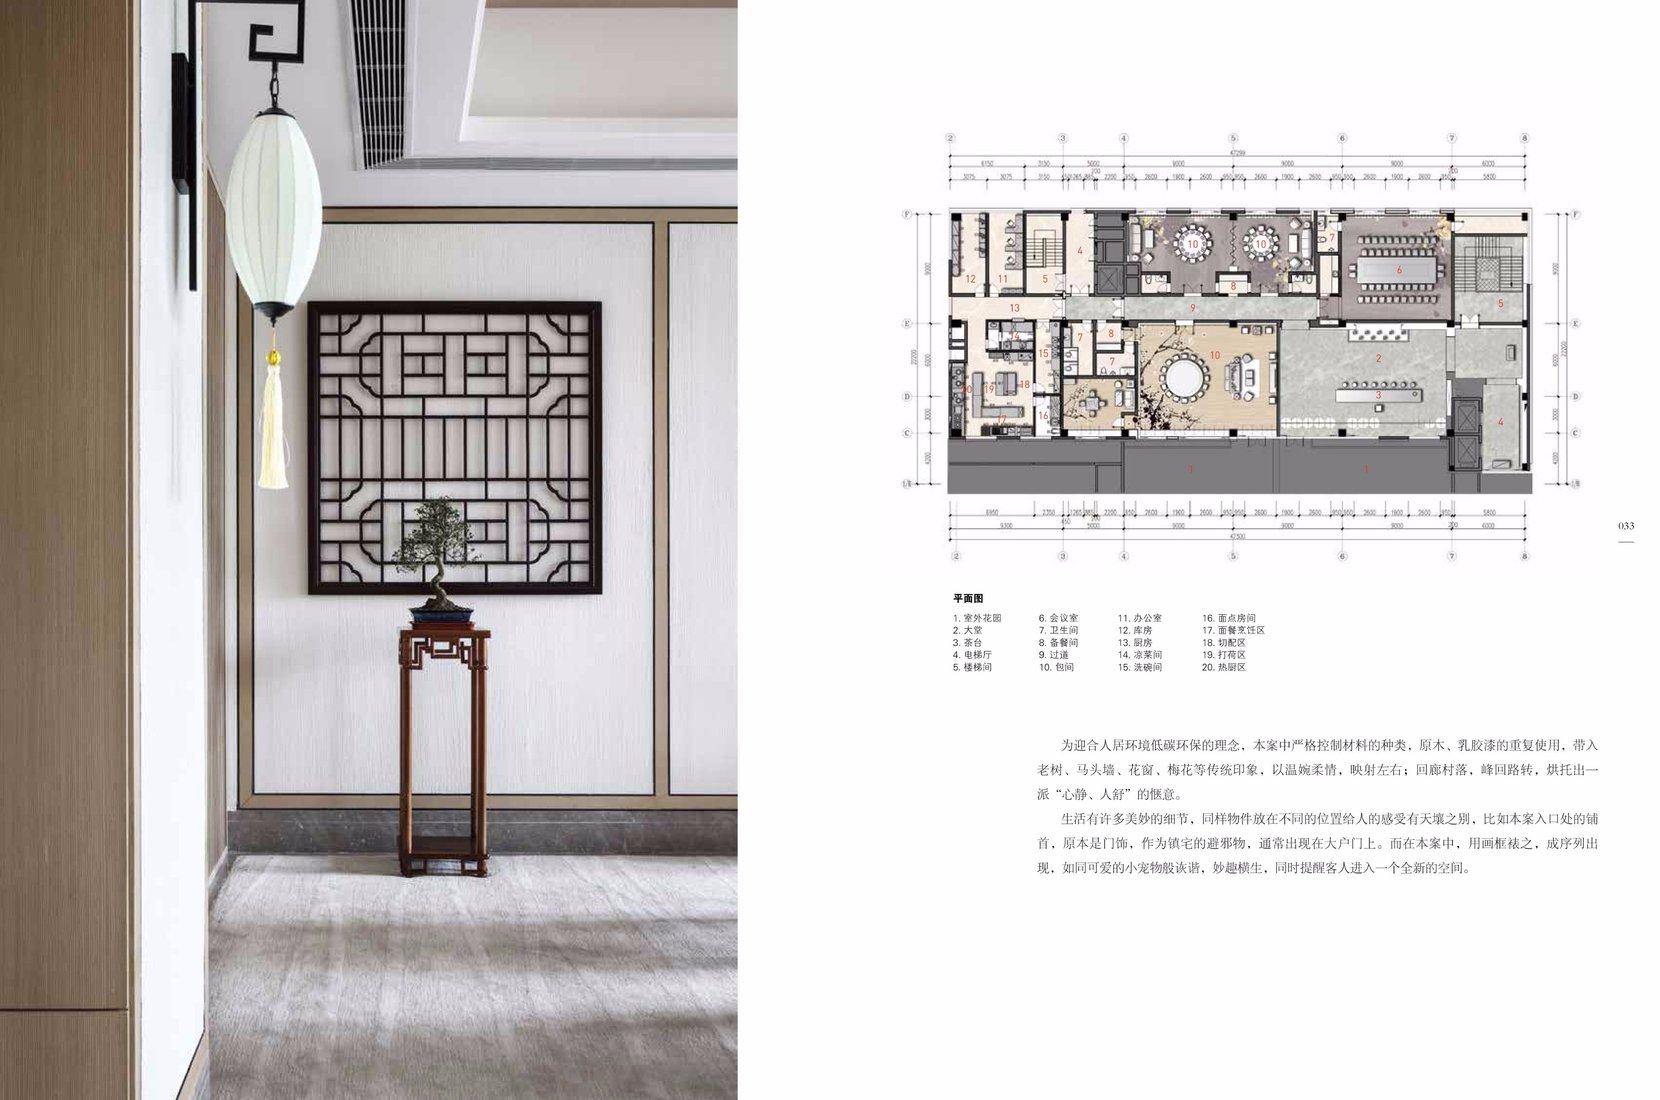 《中国风格》--21个精选新中式风格室内设计案例